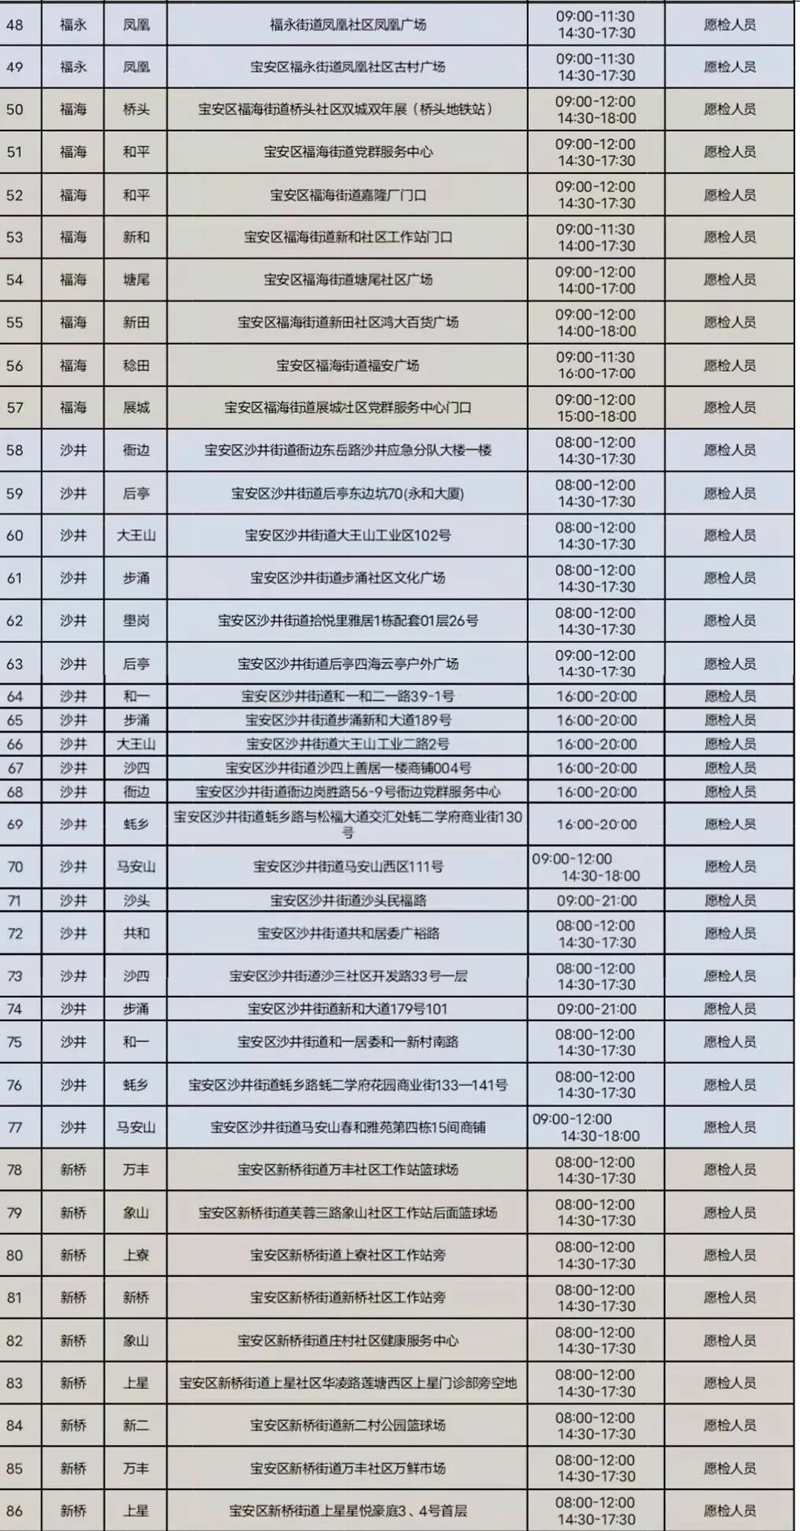 月8日深圳免费核酸检测点汇总（含福田、罗湖、宝安、光明、坪山区）"